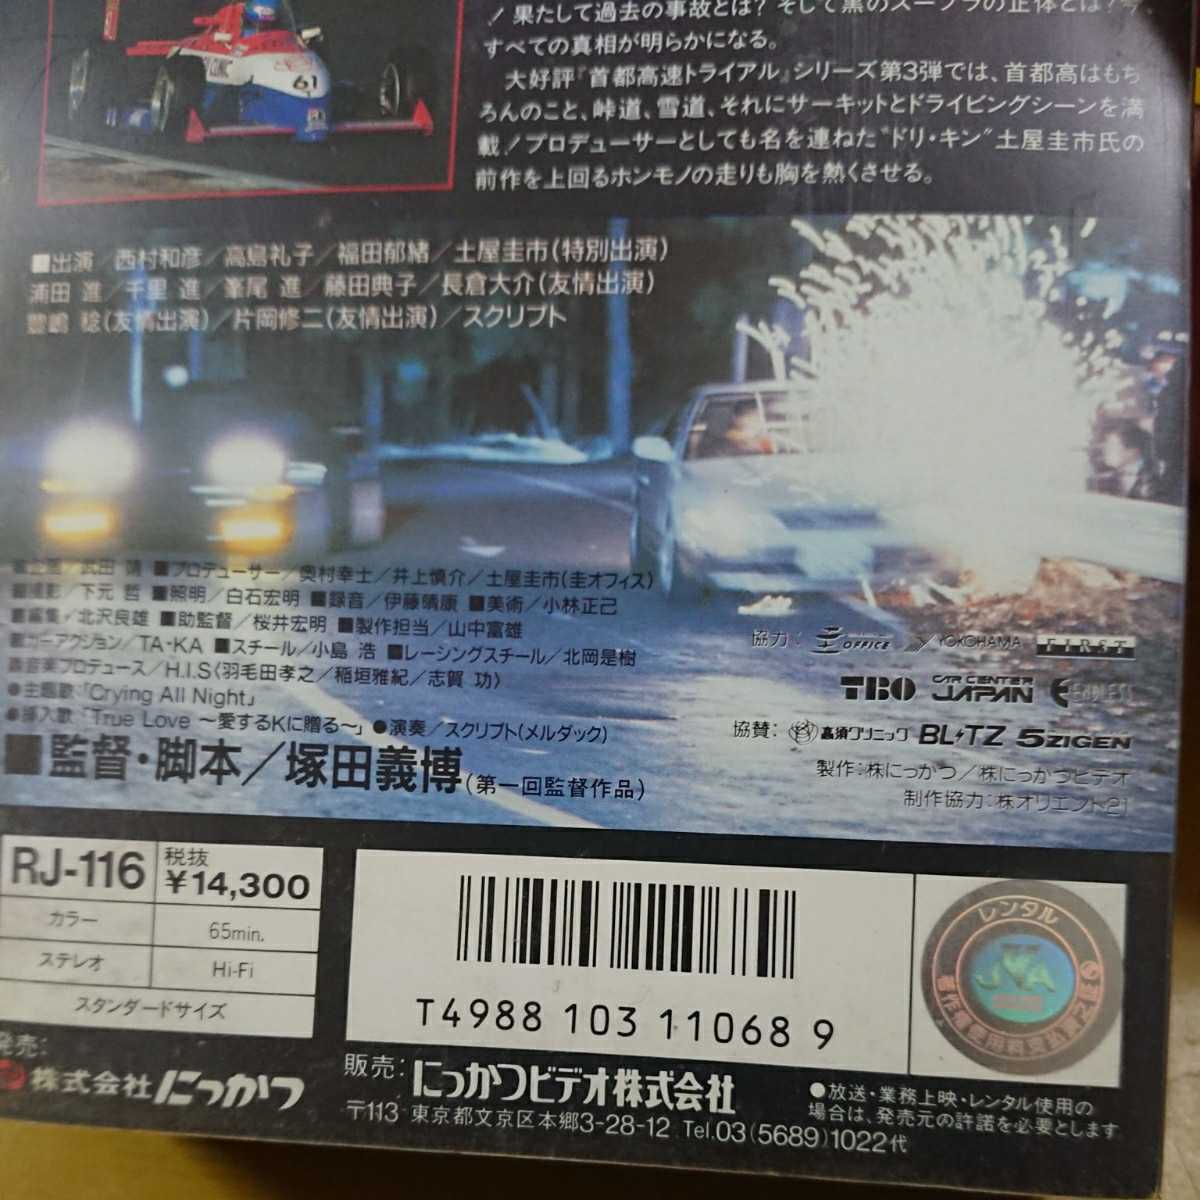 [ шея столица высокая скорость Trial 3] б/у видео земля магазин . город Takashima Reiko запад . мир . Fukuda .. перевал Battle Skyline R32 Silvia Supra дрифт 